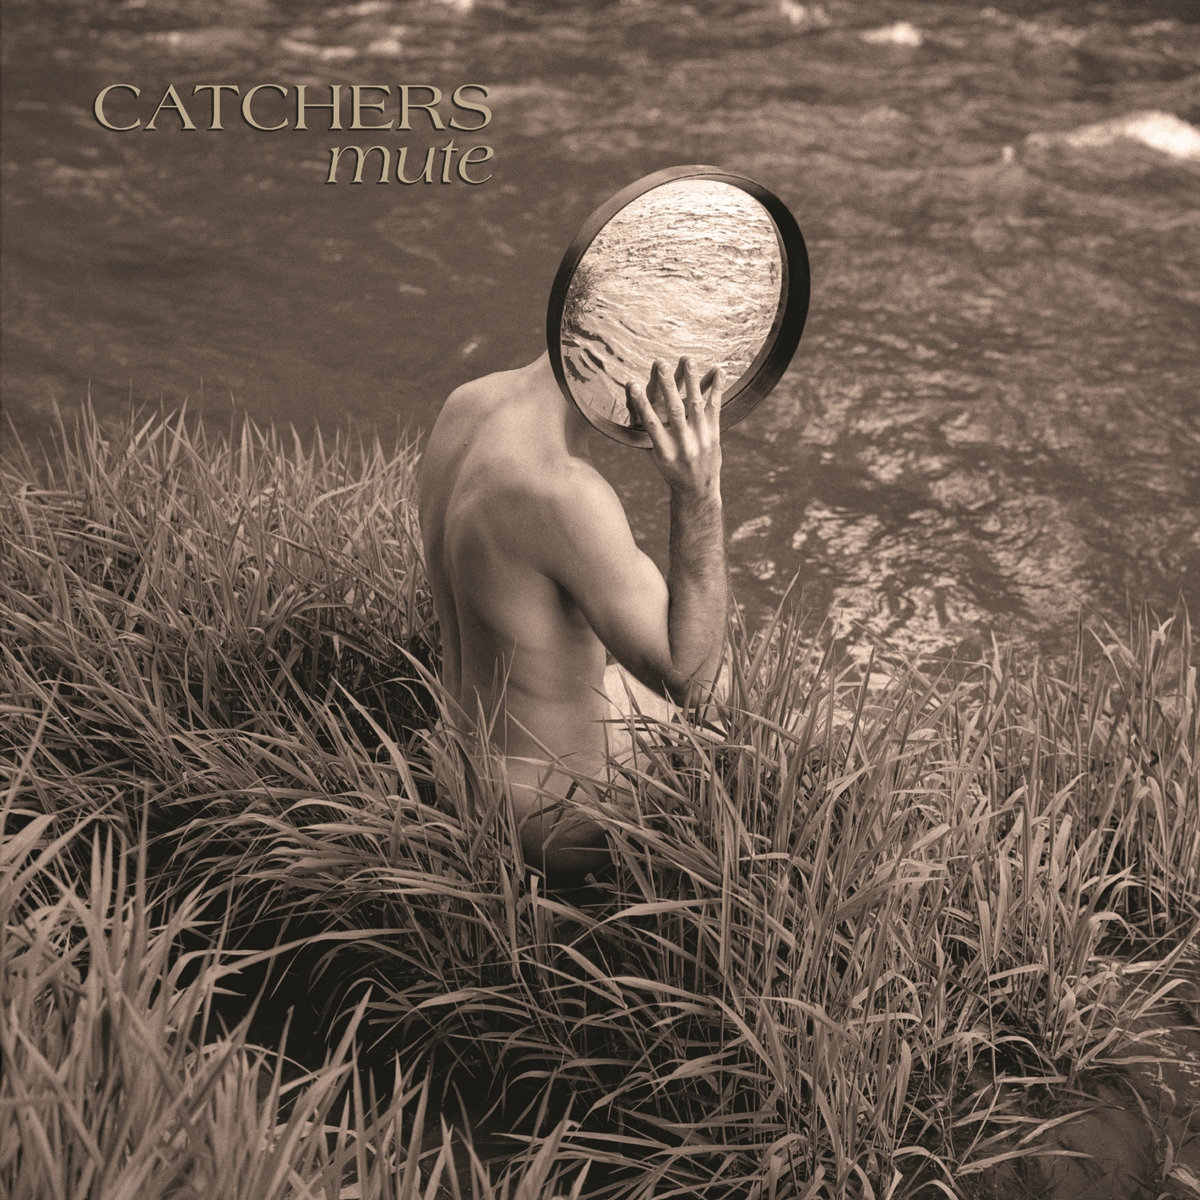 Catchers : réédition exhaustive de "Mute"